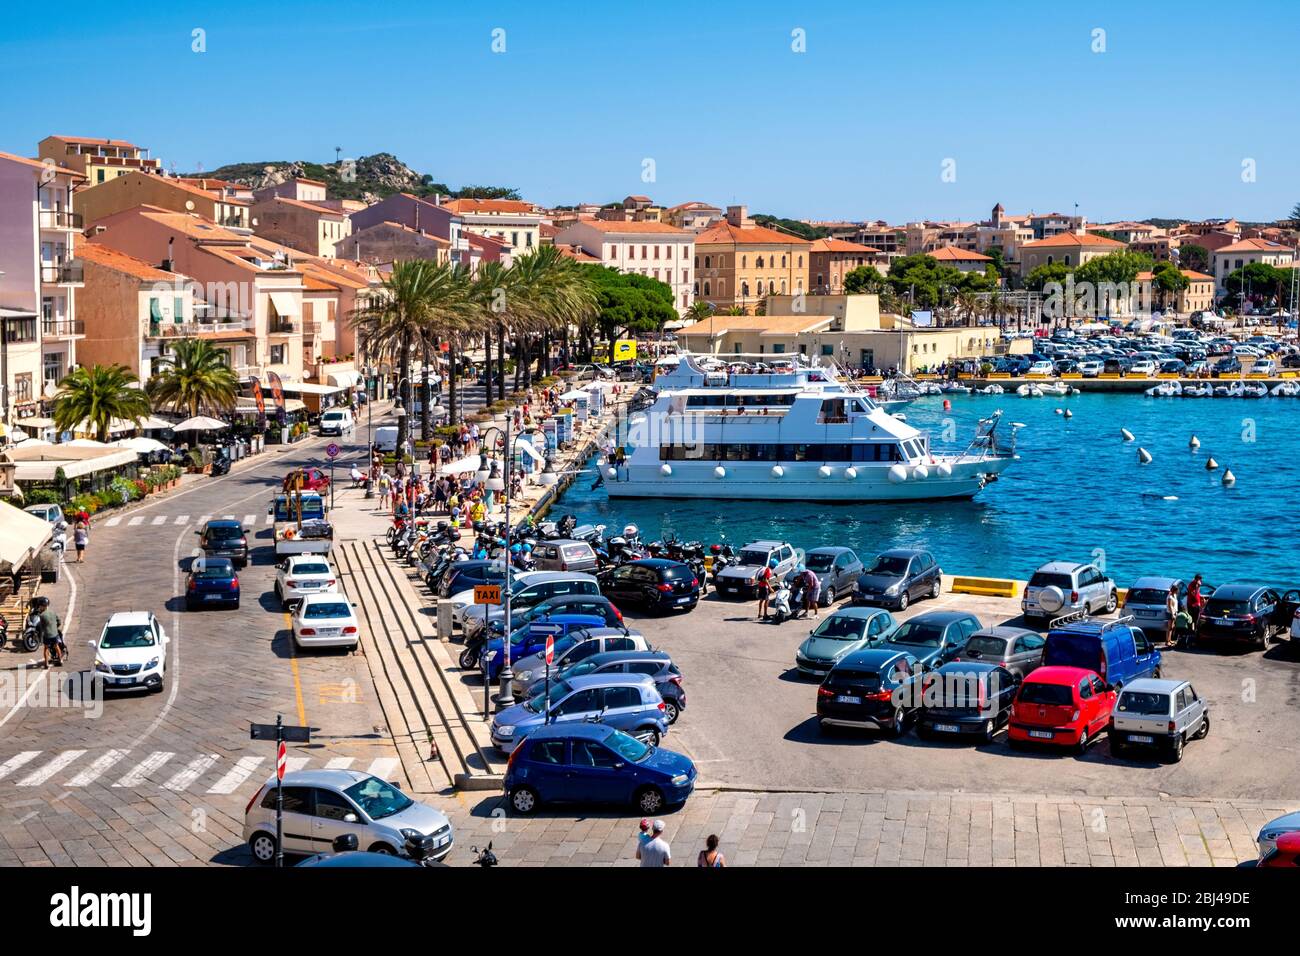 La Maddalena, Sardegna / Italia - 2019/07/17: Vista panoramica del porto di la Maddalena - Porto di Cala Gavetta - e del quartiere portuale sul Mar Tirreno Foto Stock